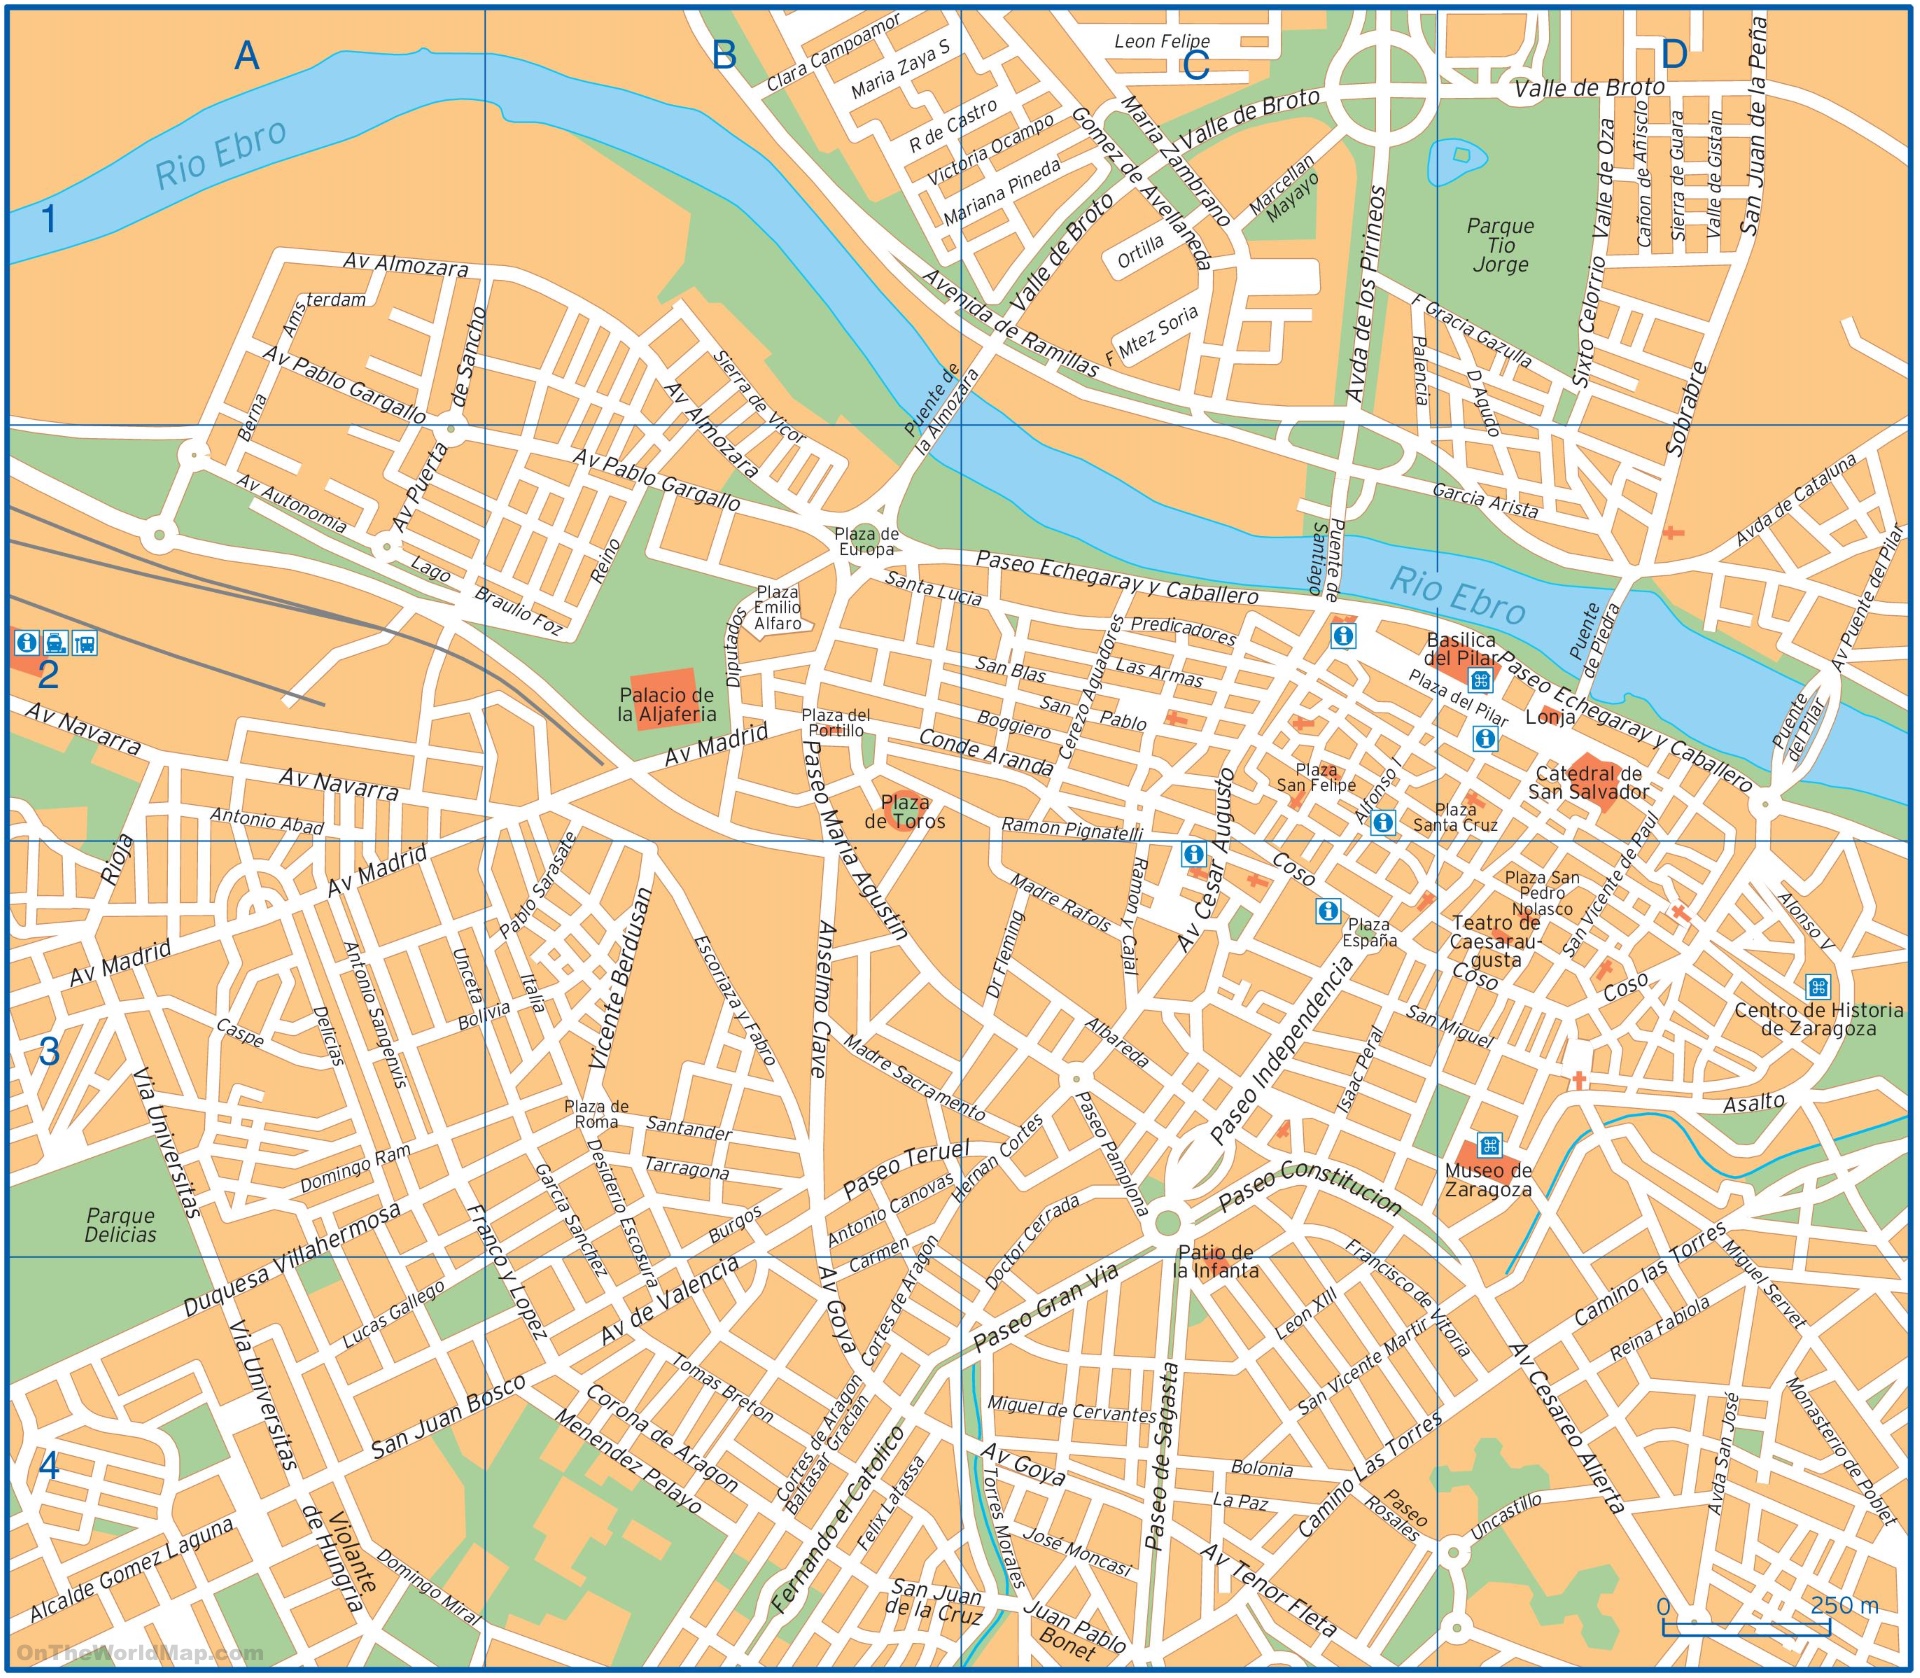 Подробная карта Сарагосы с достопримечательностями